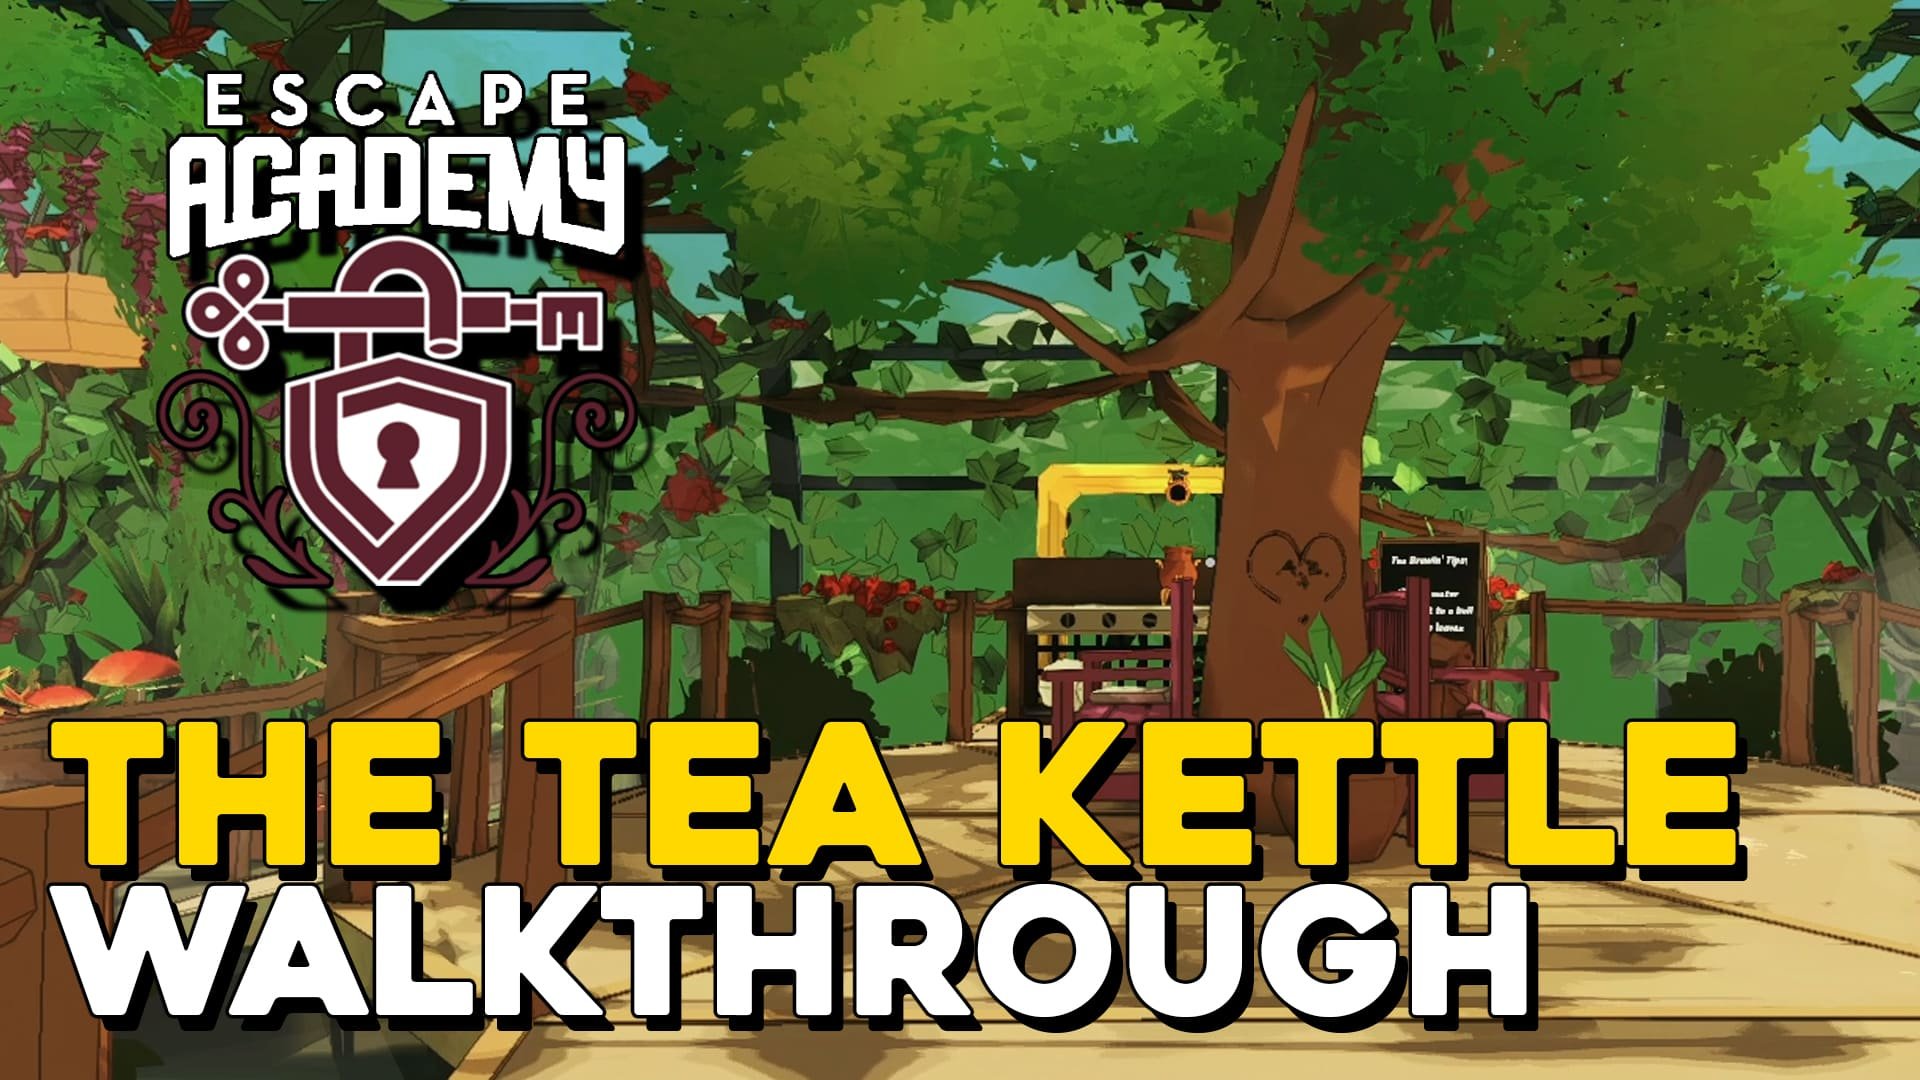 Escape Academy The Tea Kettle Walkthrough